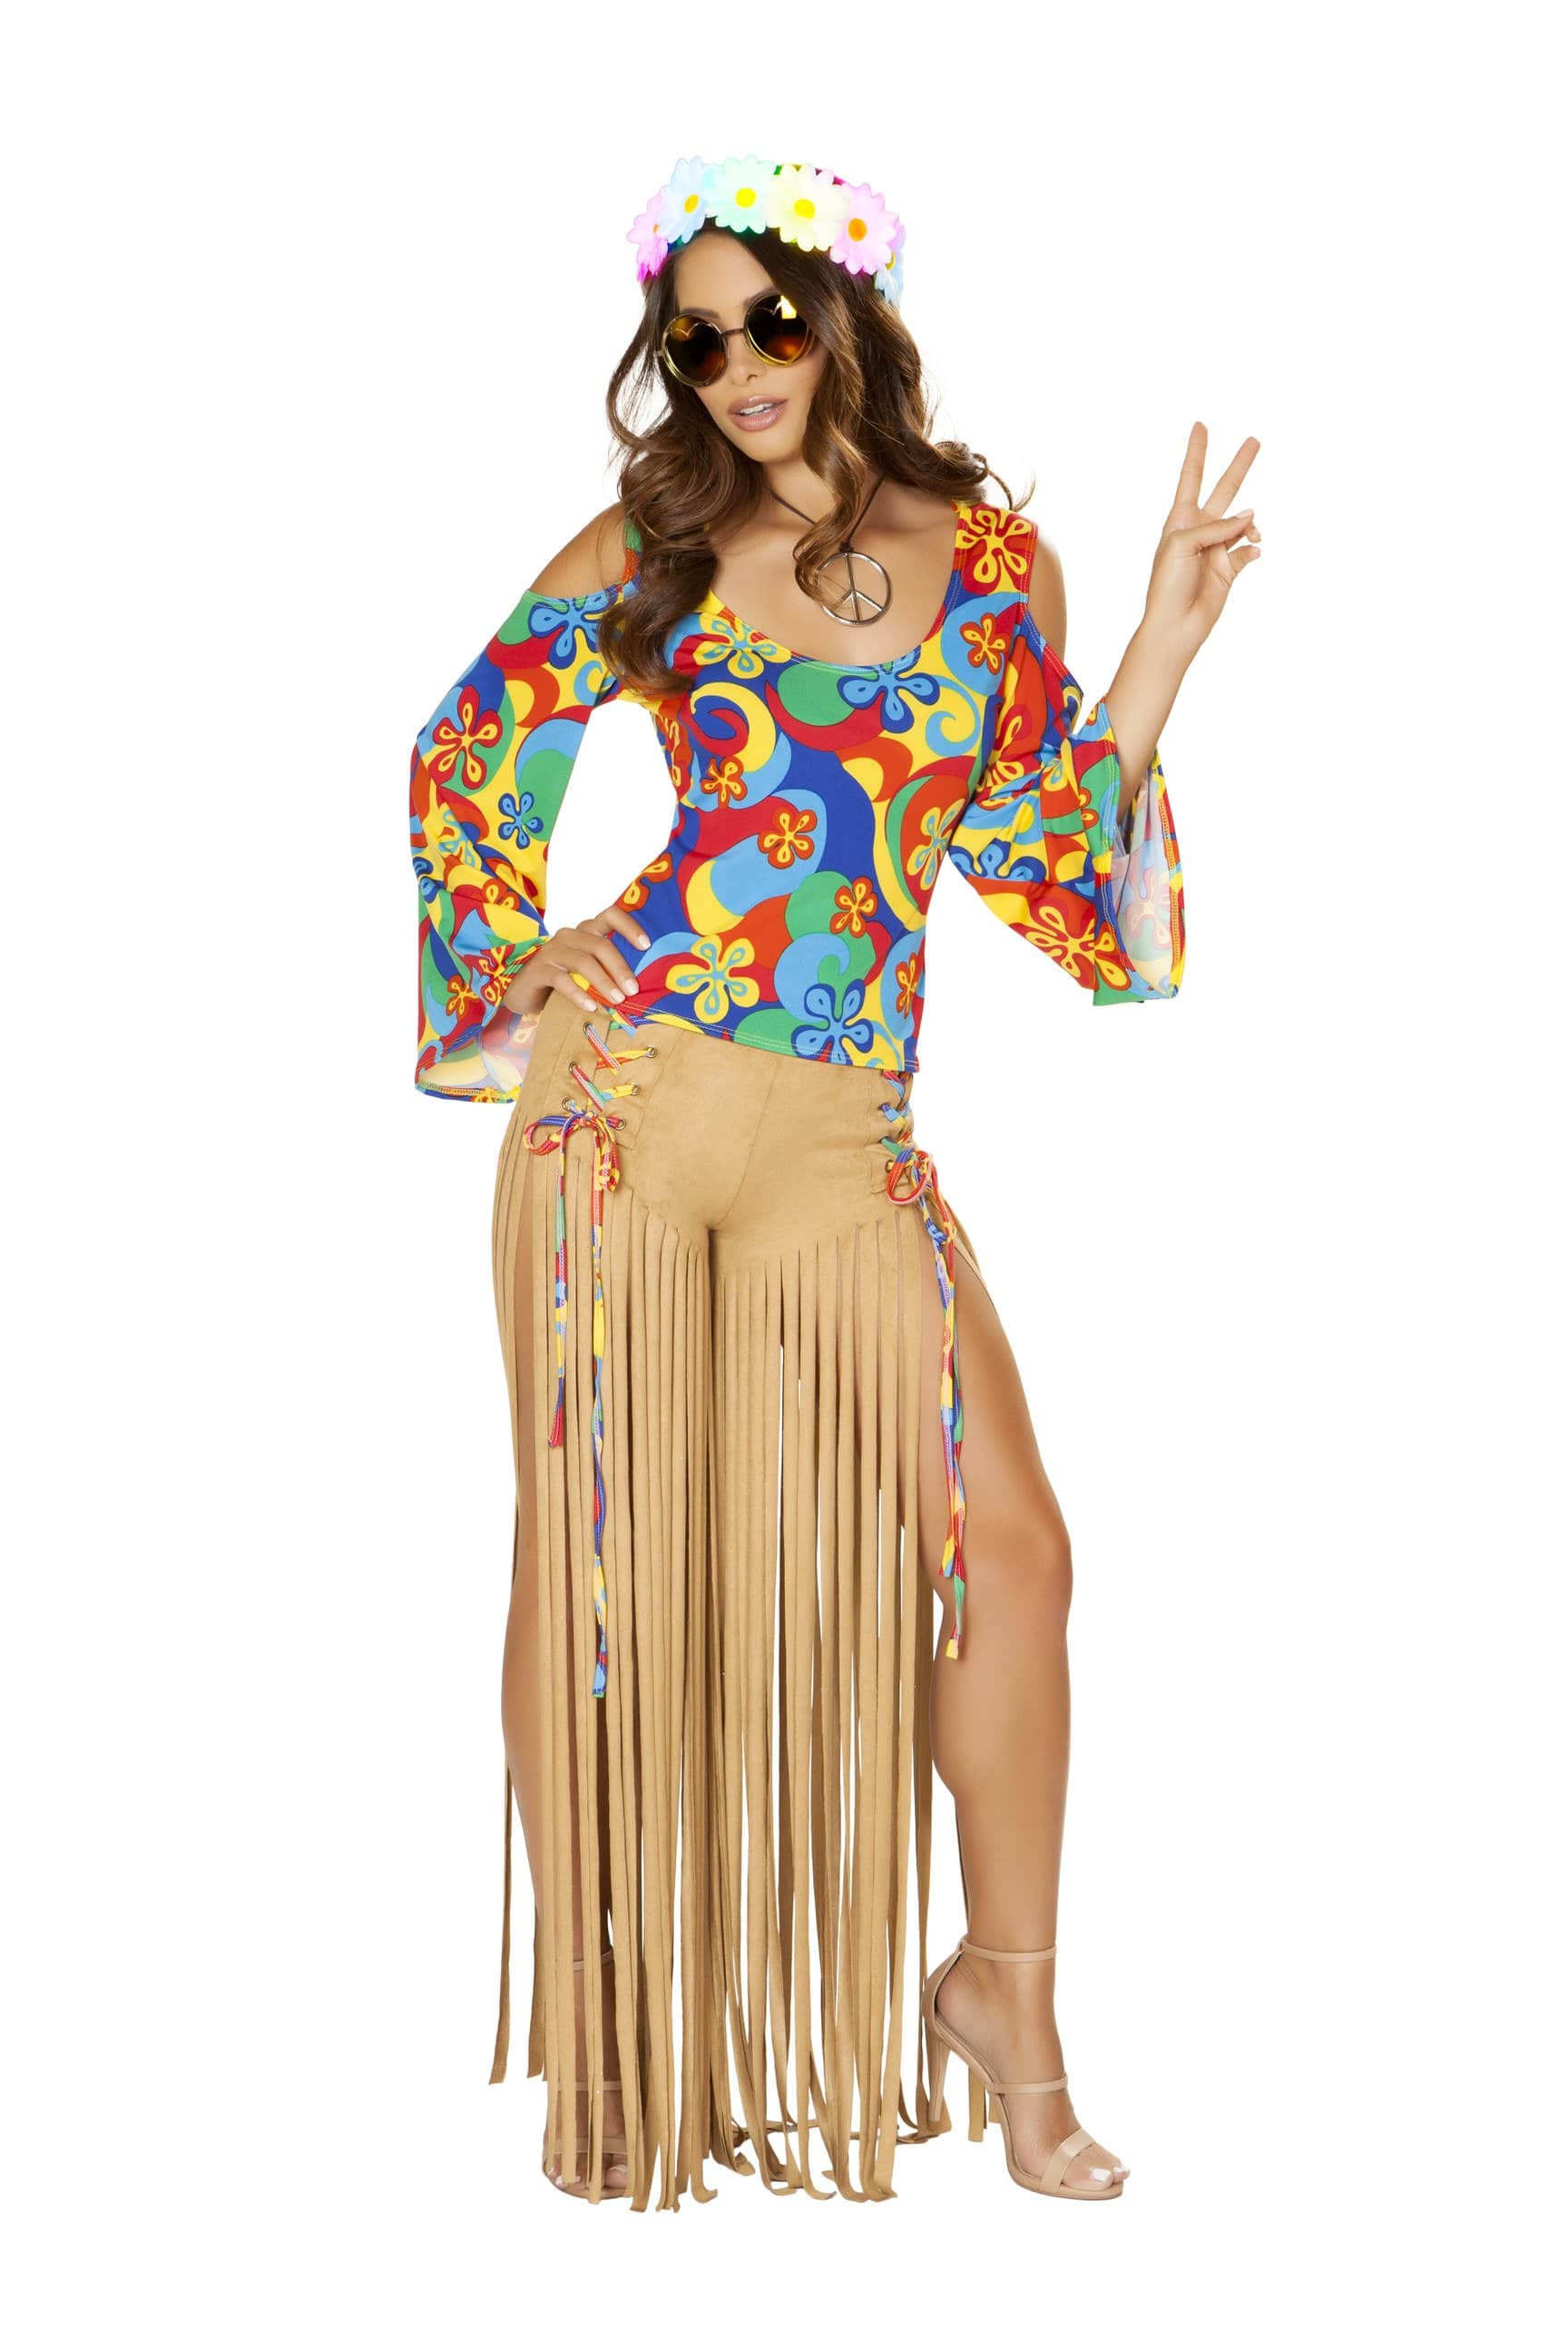 Roma Small / Multicolor 2pc Hippie Princess SHC-4881-S-R Apparel & Accessories > Costumes & Accessories > Costumes